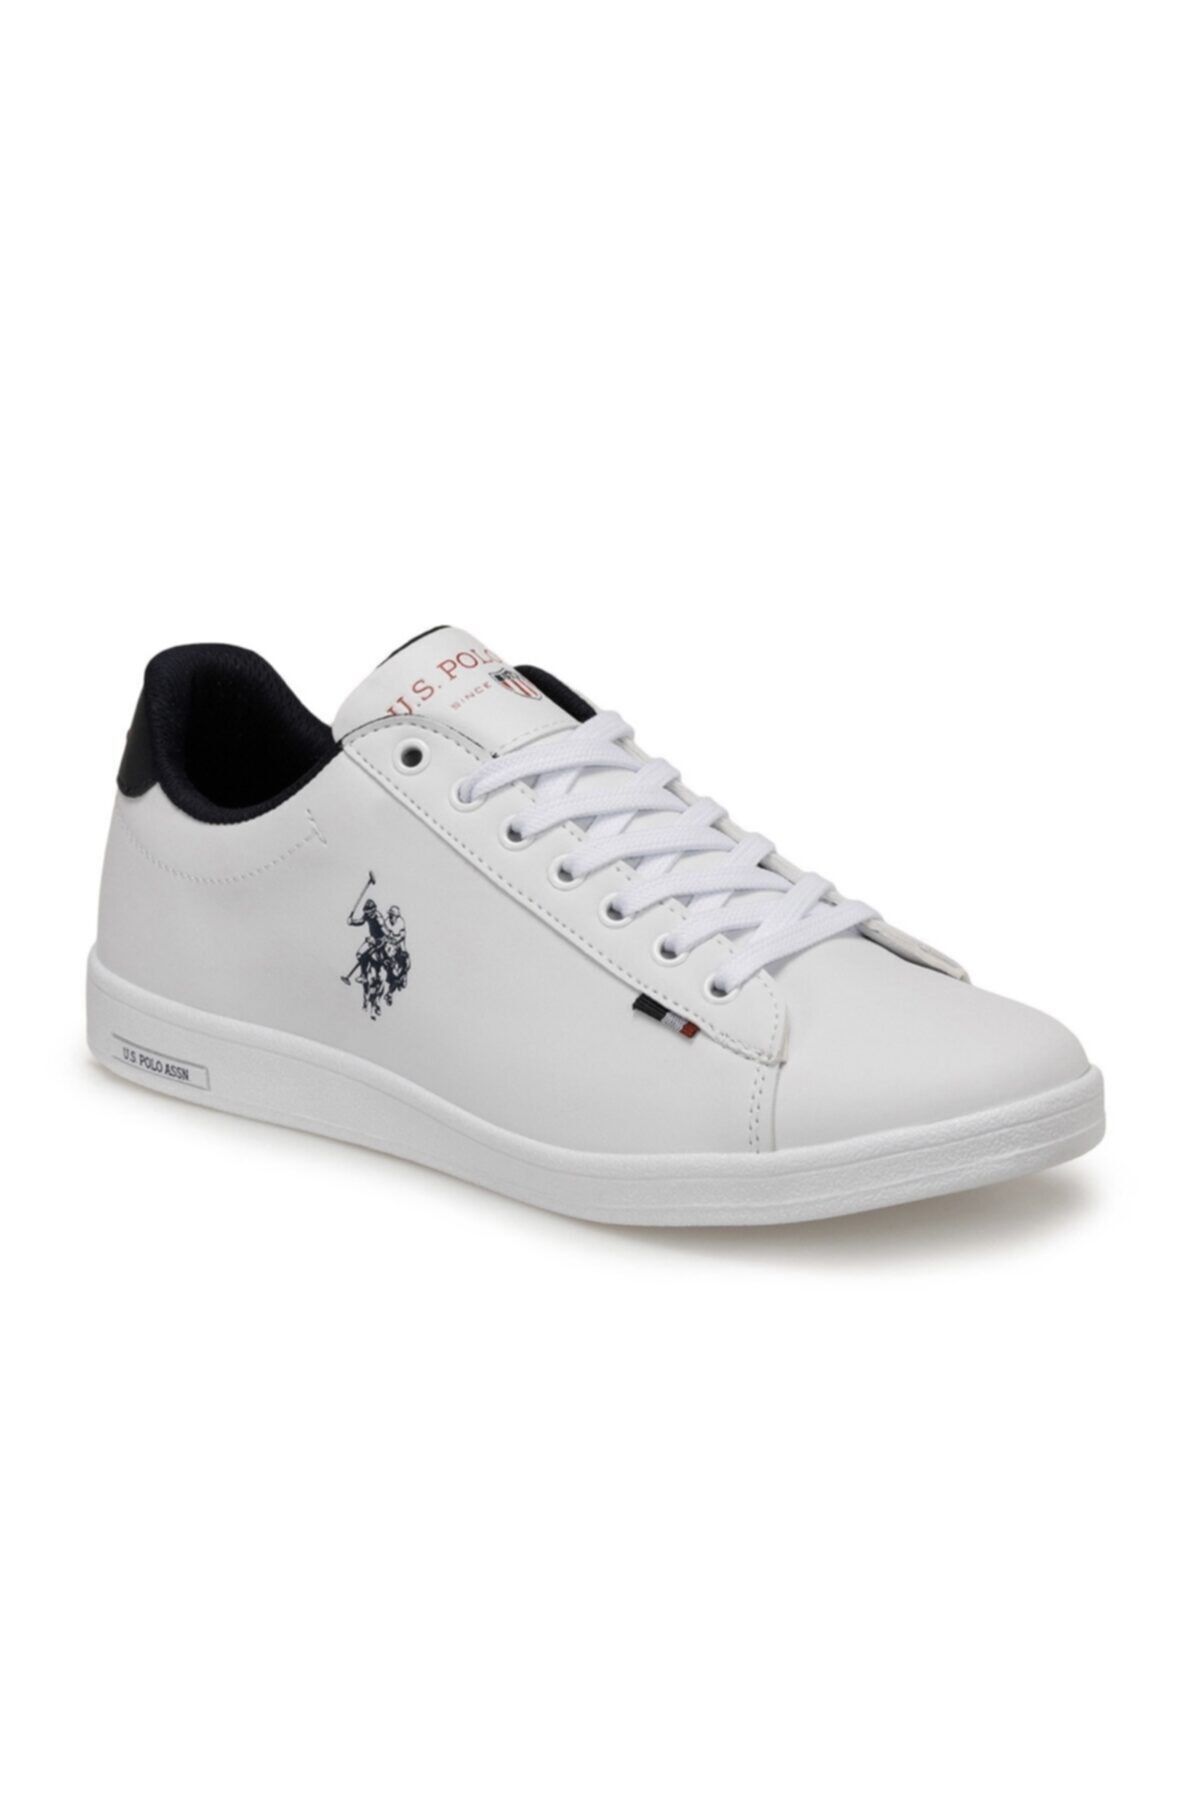 U.S. Polo Assn. Beyaz Renk Spor Sneaker Franco 1fx